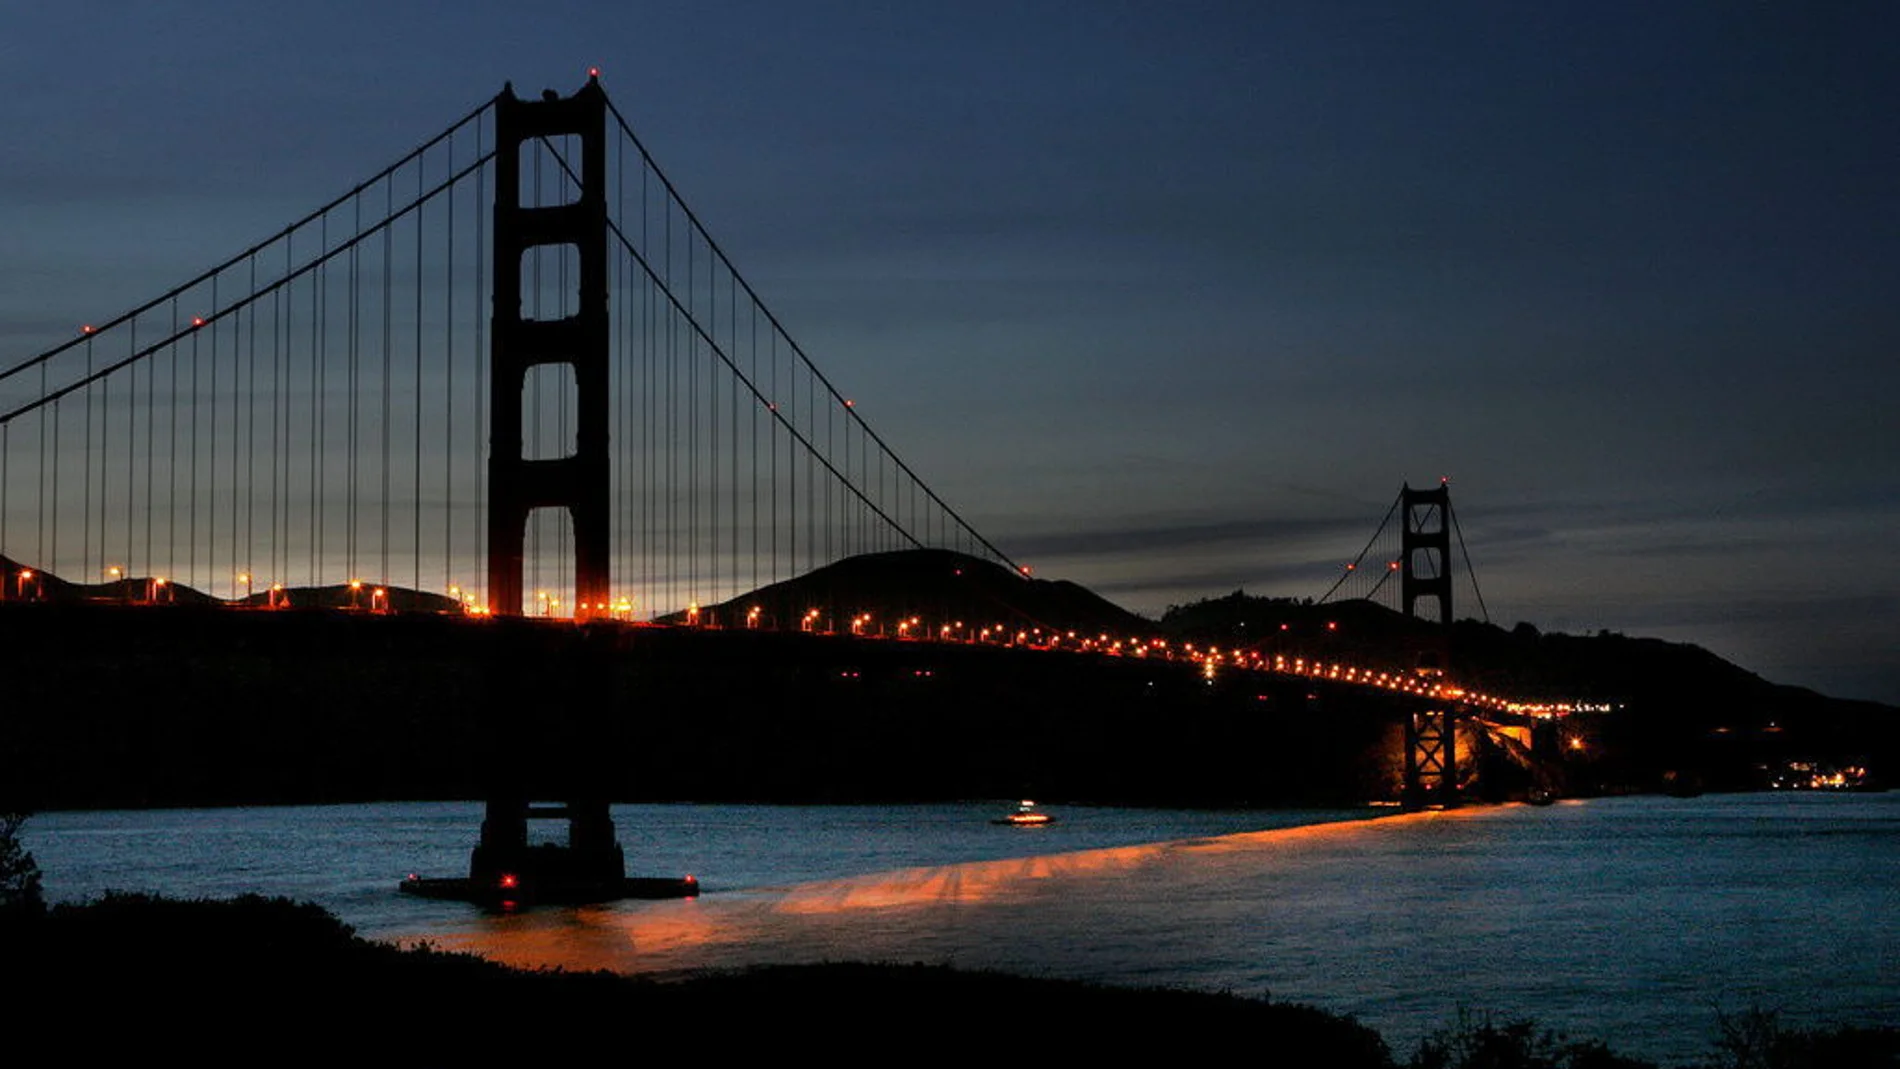 Fotografía del puente Golden Gate de San Francisco apagado durante una edición de la Hora del Planeta